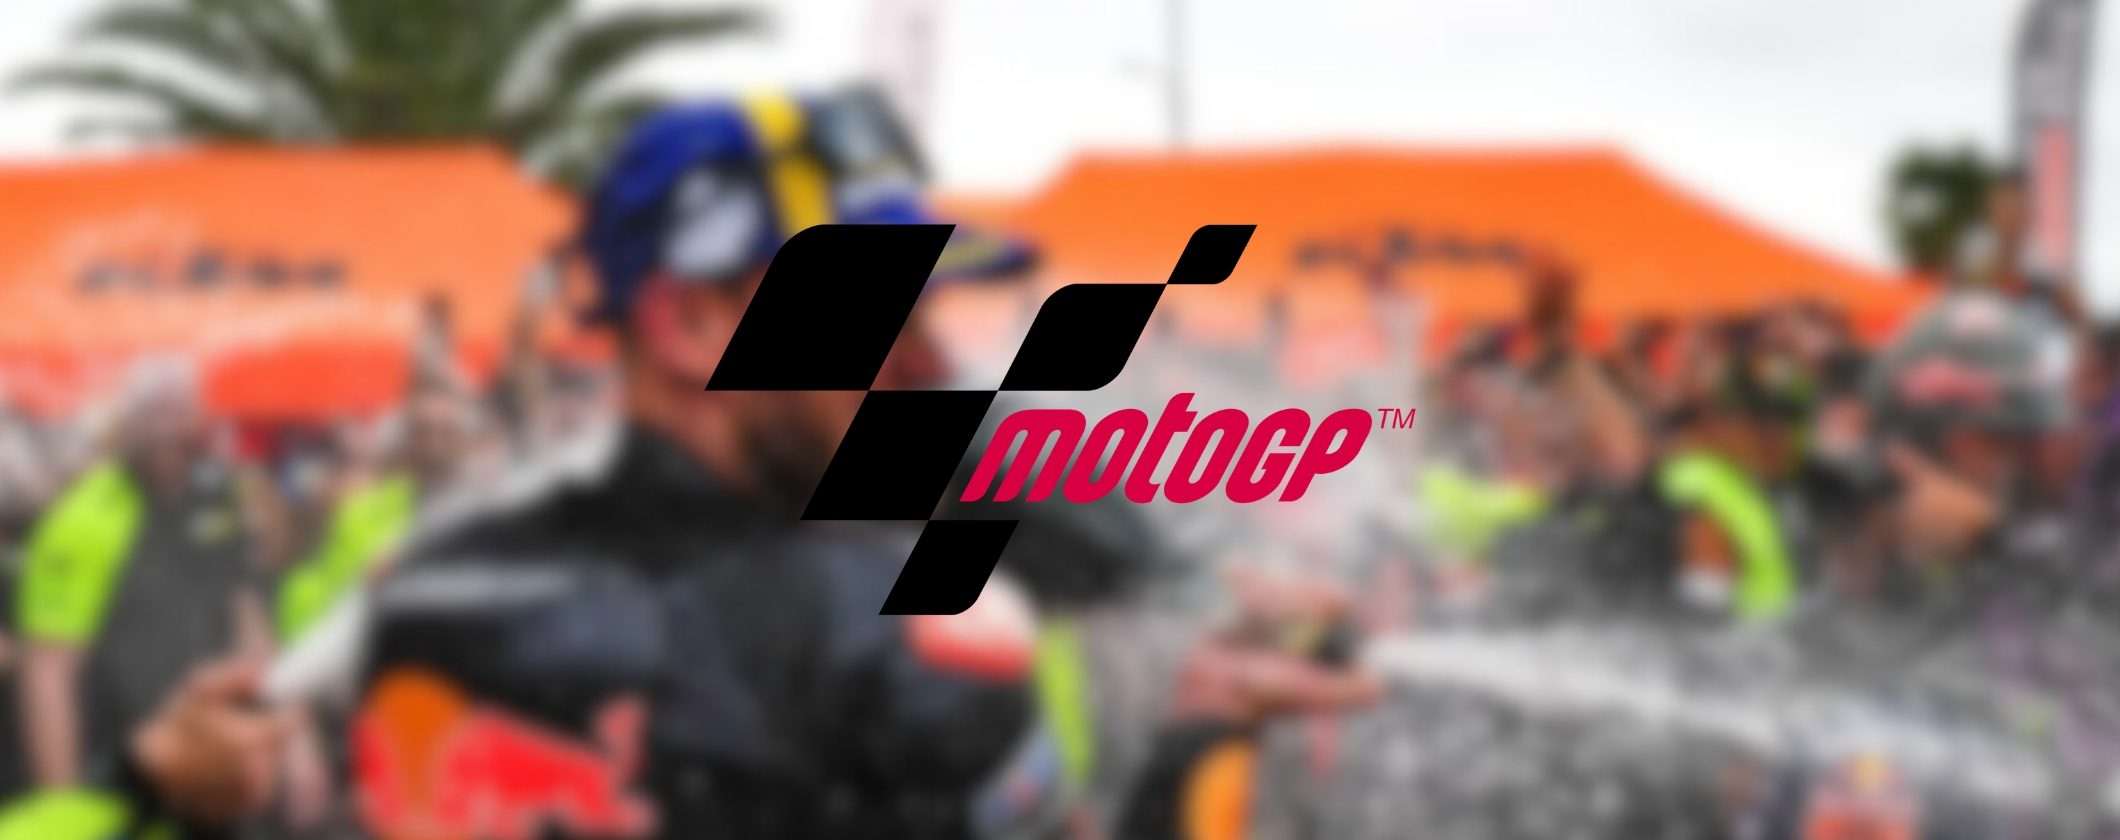 MotoGP delle Americhe: come guardare la gara in diretta streaming